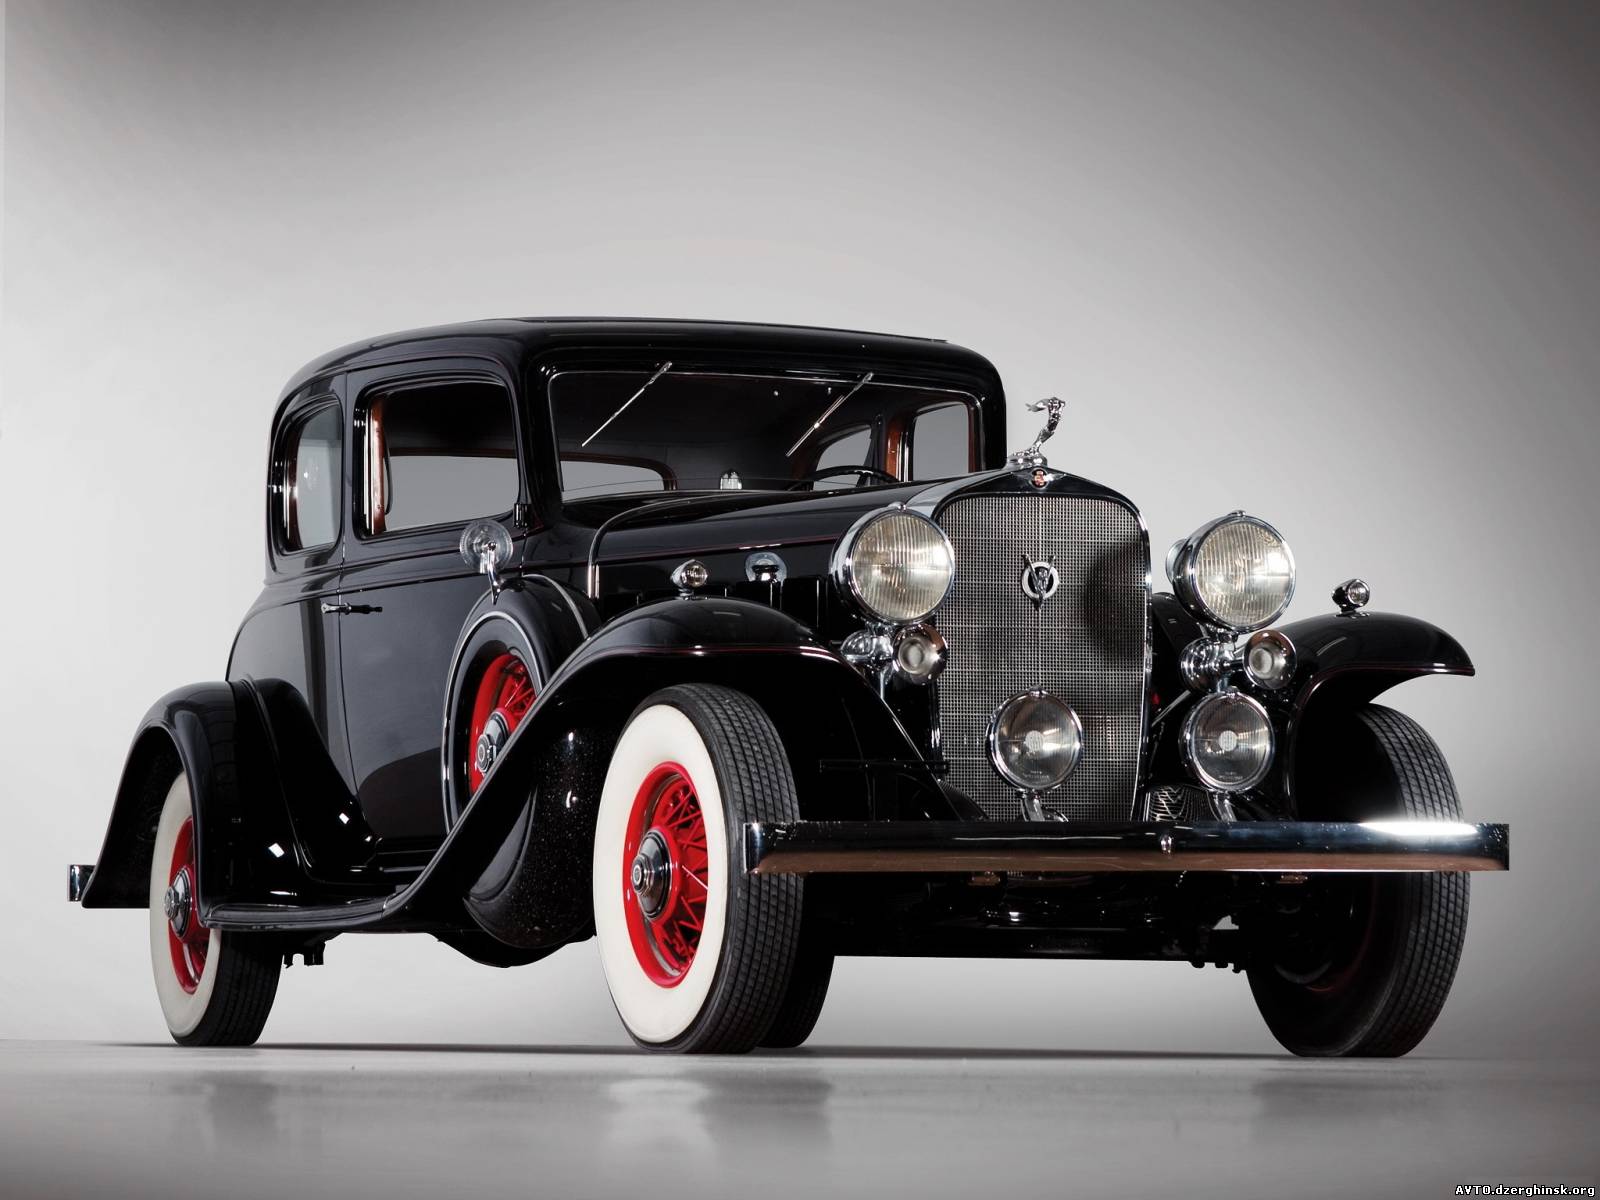 033. 1932 Cadillac V8 Victoria Coupe